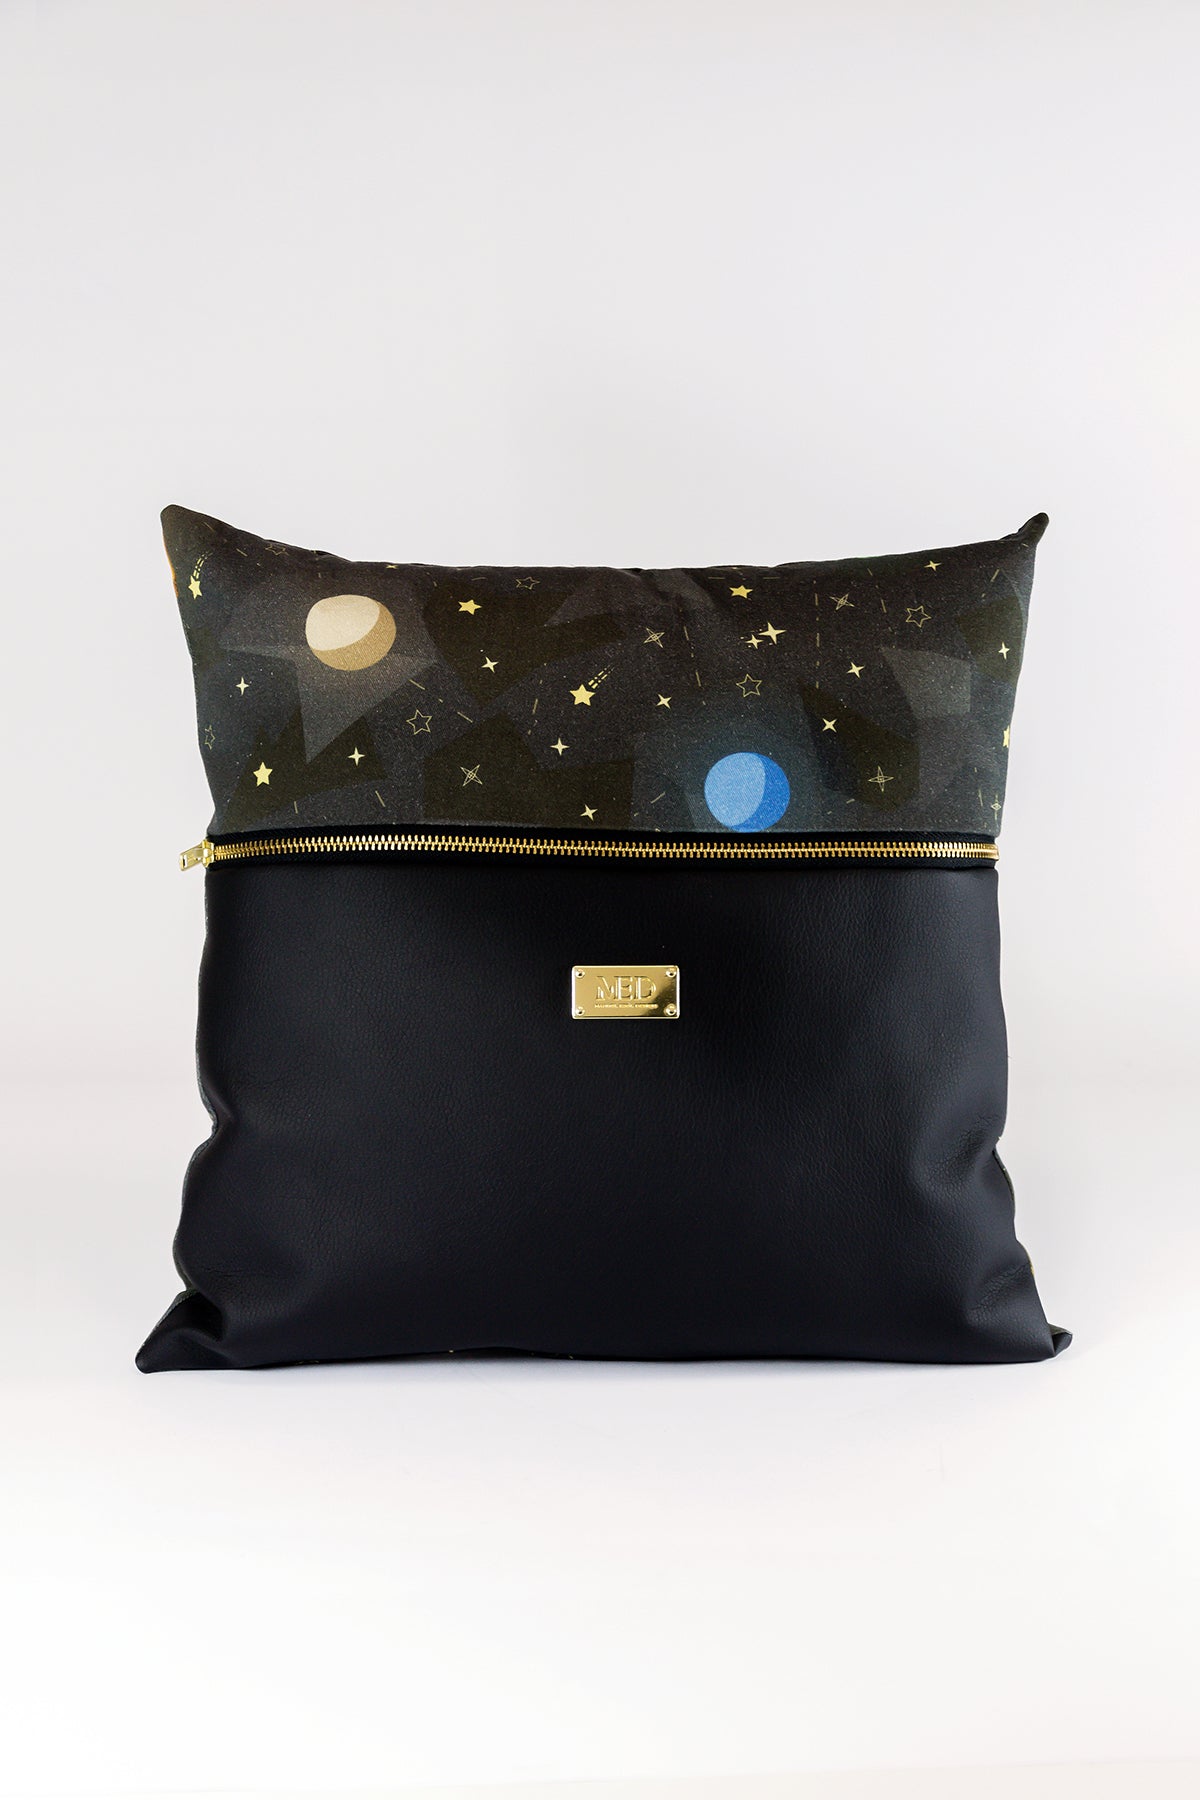 Pillow "SPACE" (cover) - Black - Manuel Essl Design